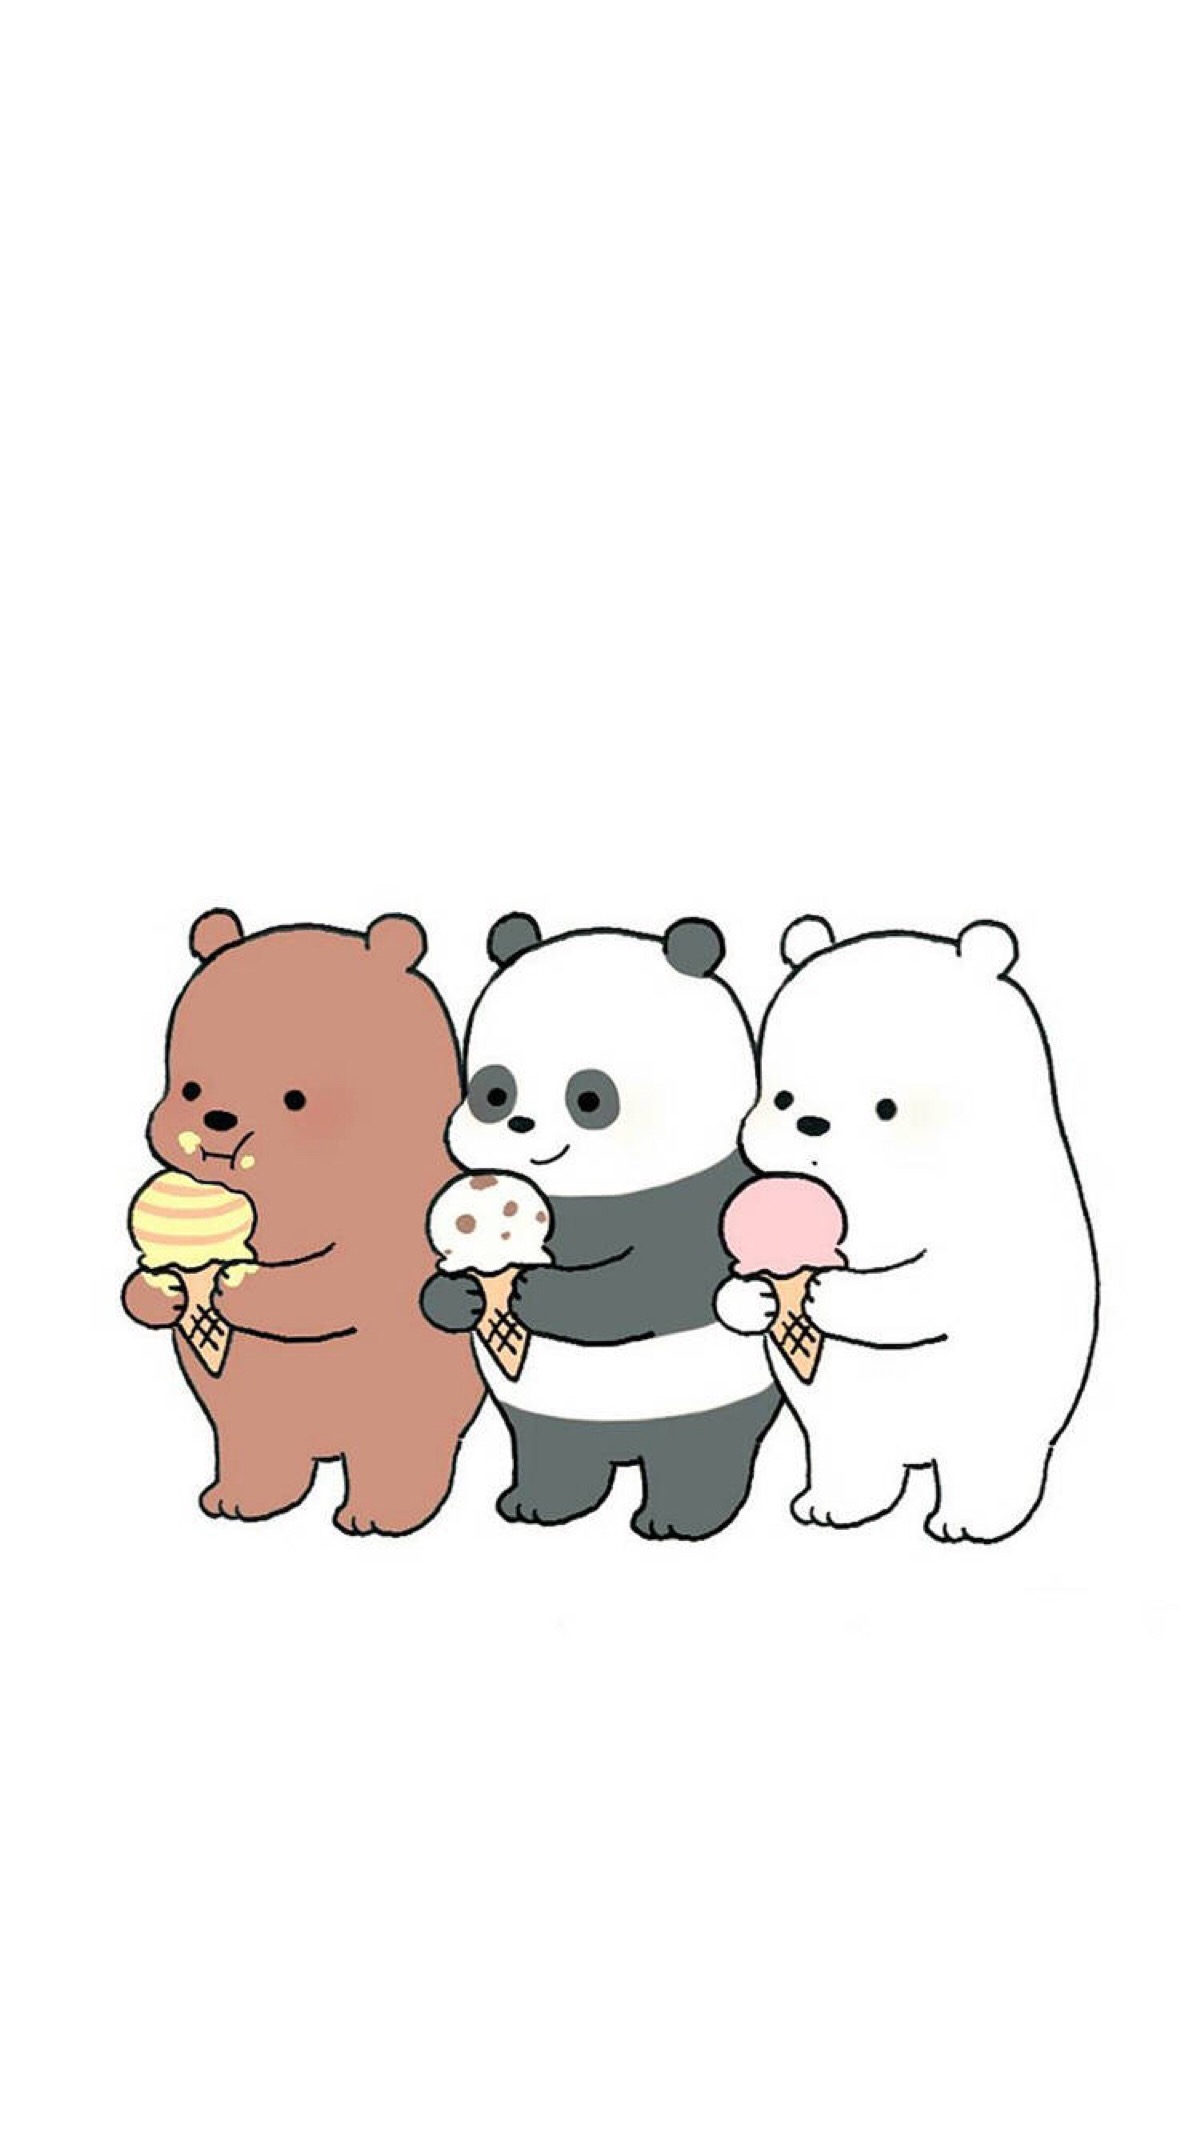 苹果壁纸,三只熊